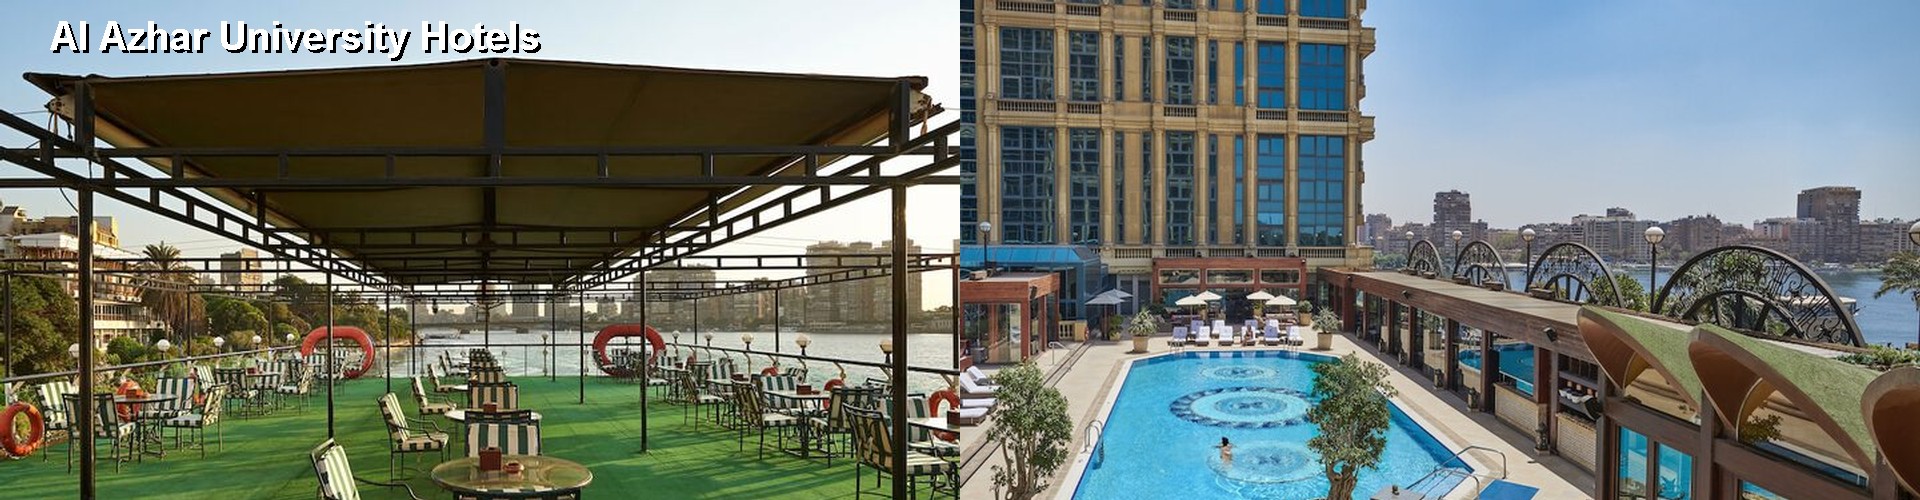 5 Best Hotels near Al Azhar University